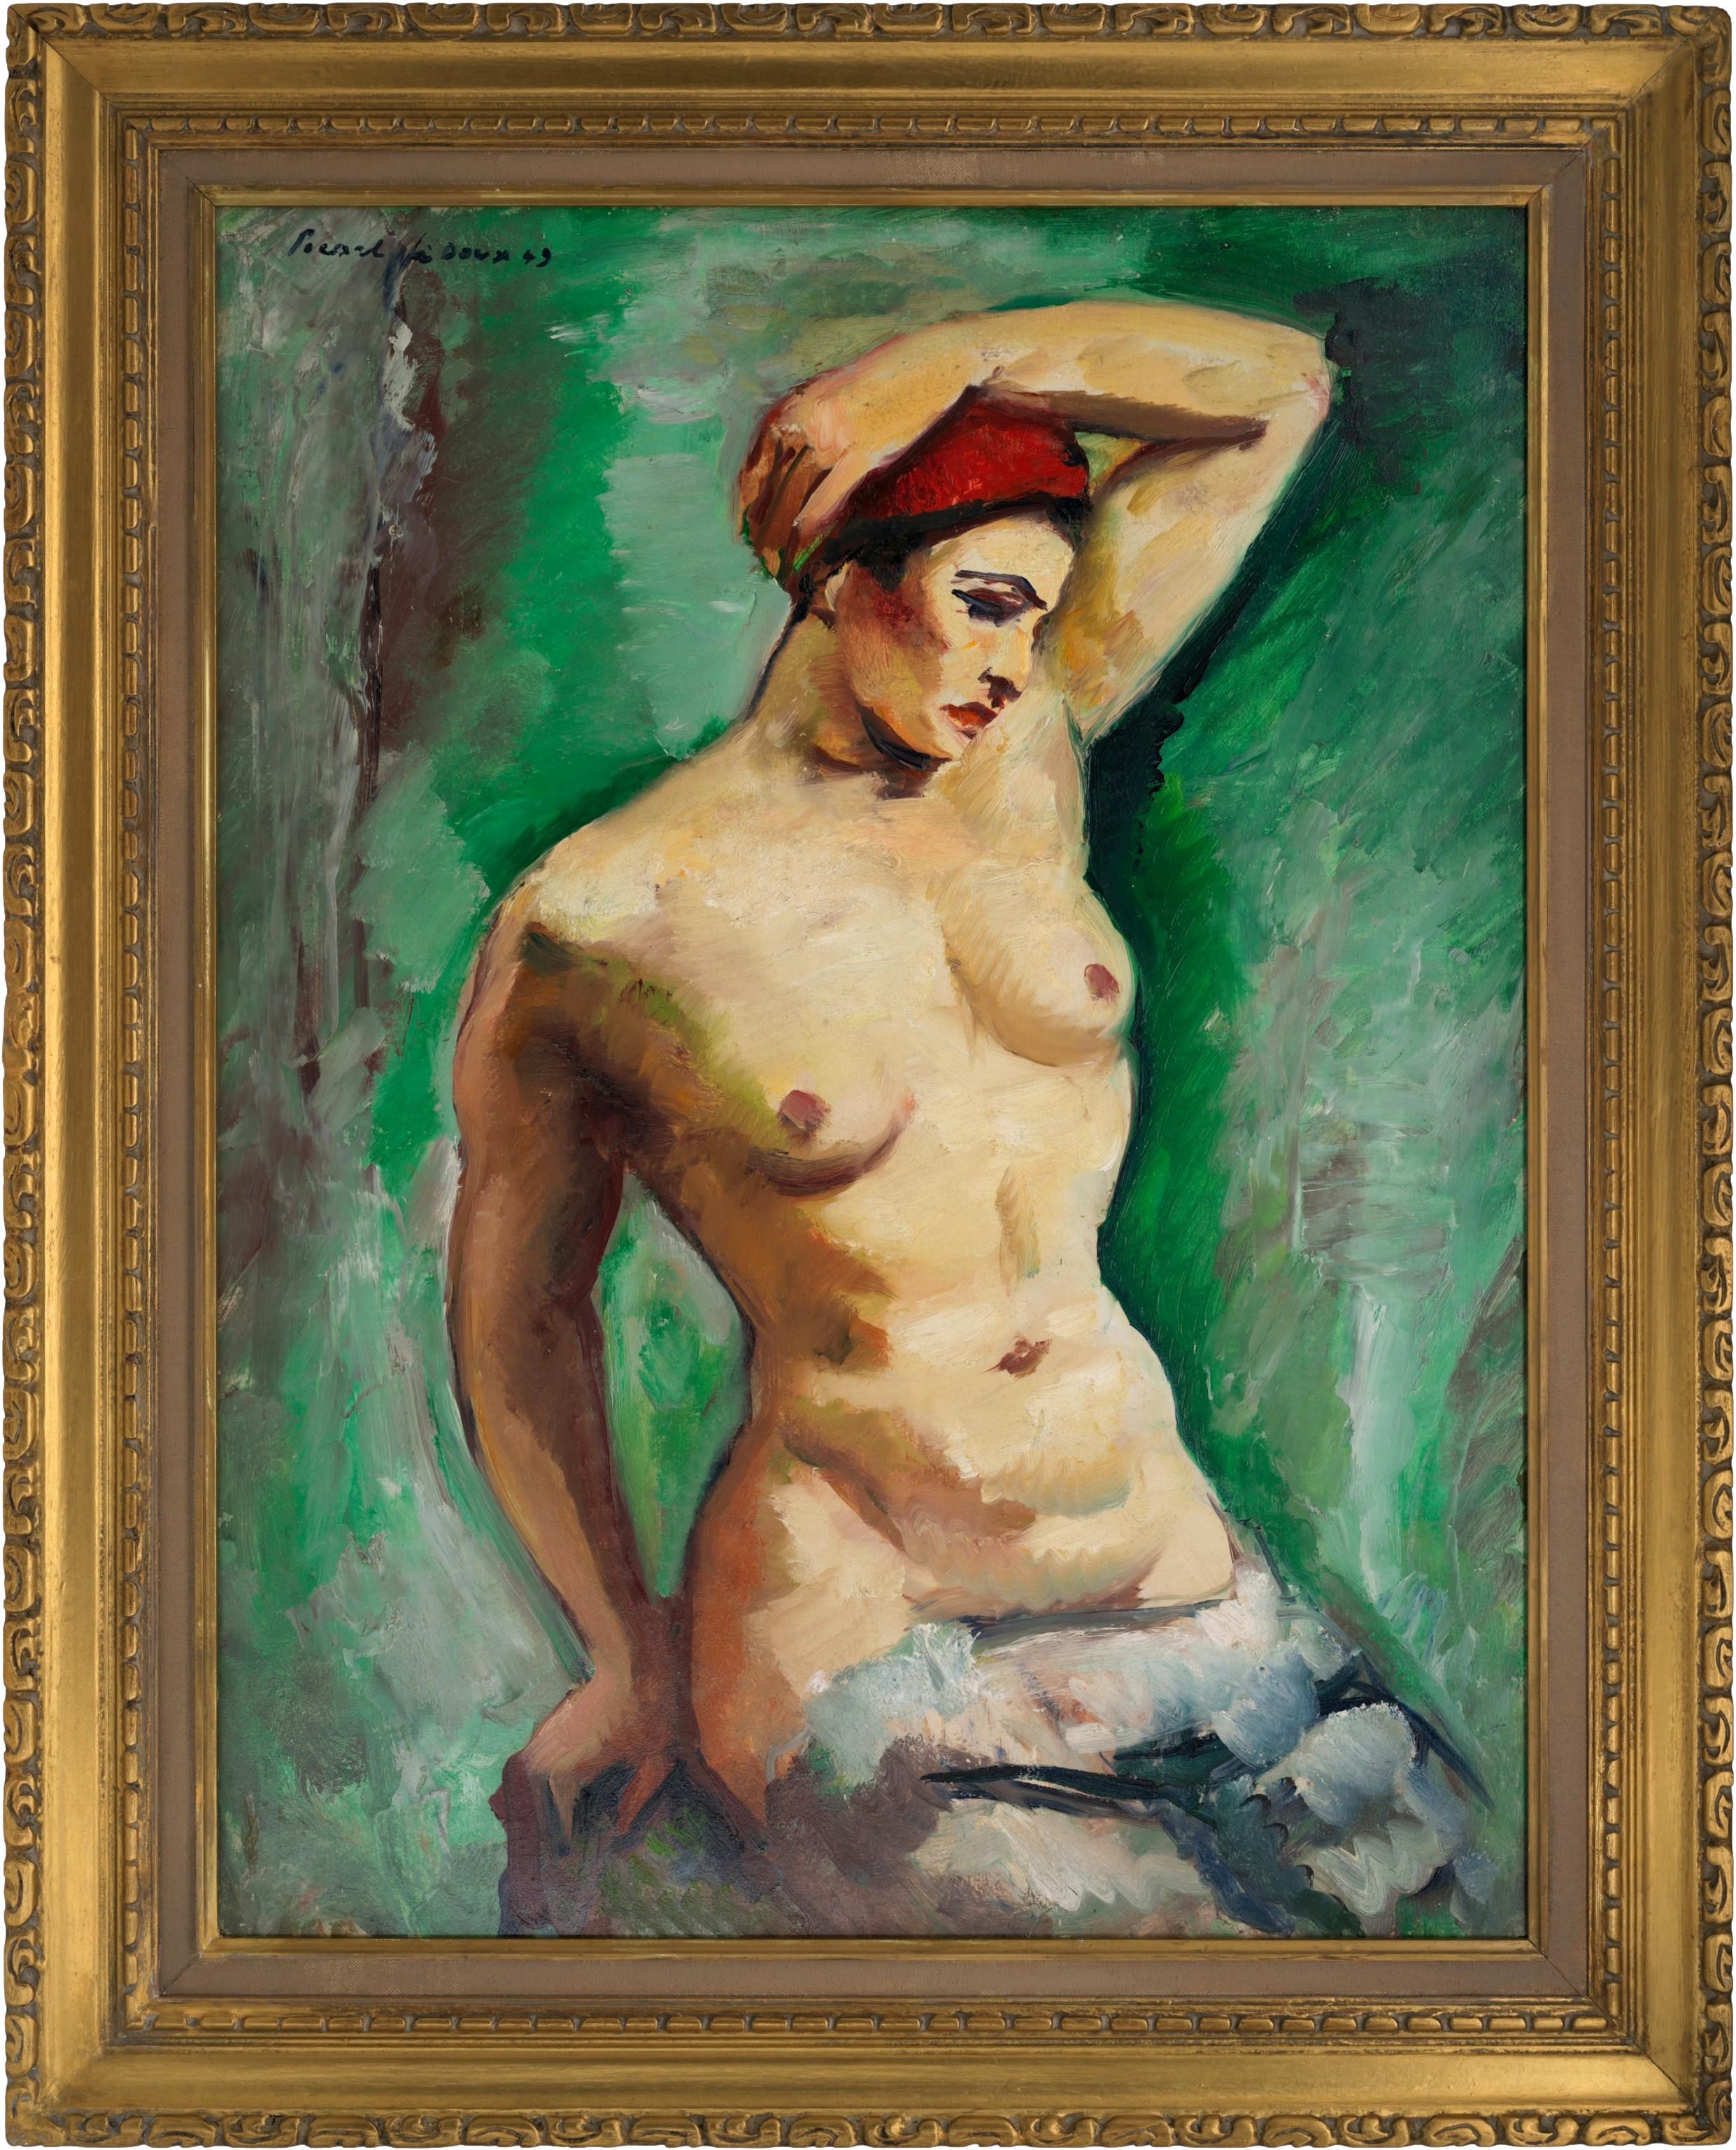 Charles Picart le Doux Portrait Painting – Charles PICART LE DOUX, Modell auf grünem Hintergrund, Öl auf Isorel, 1949